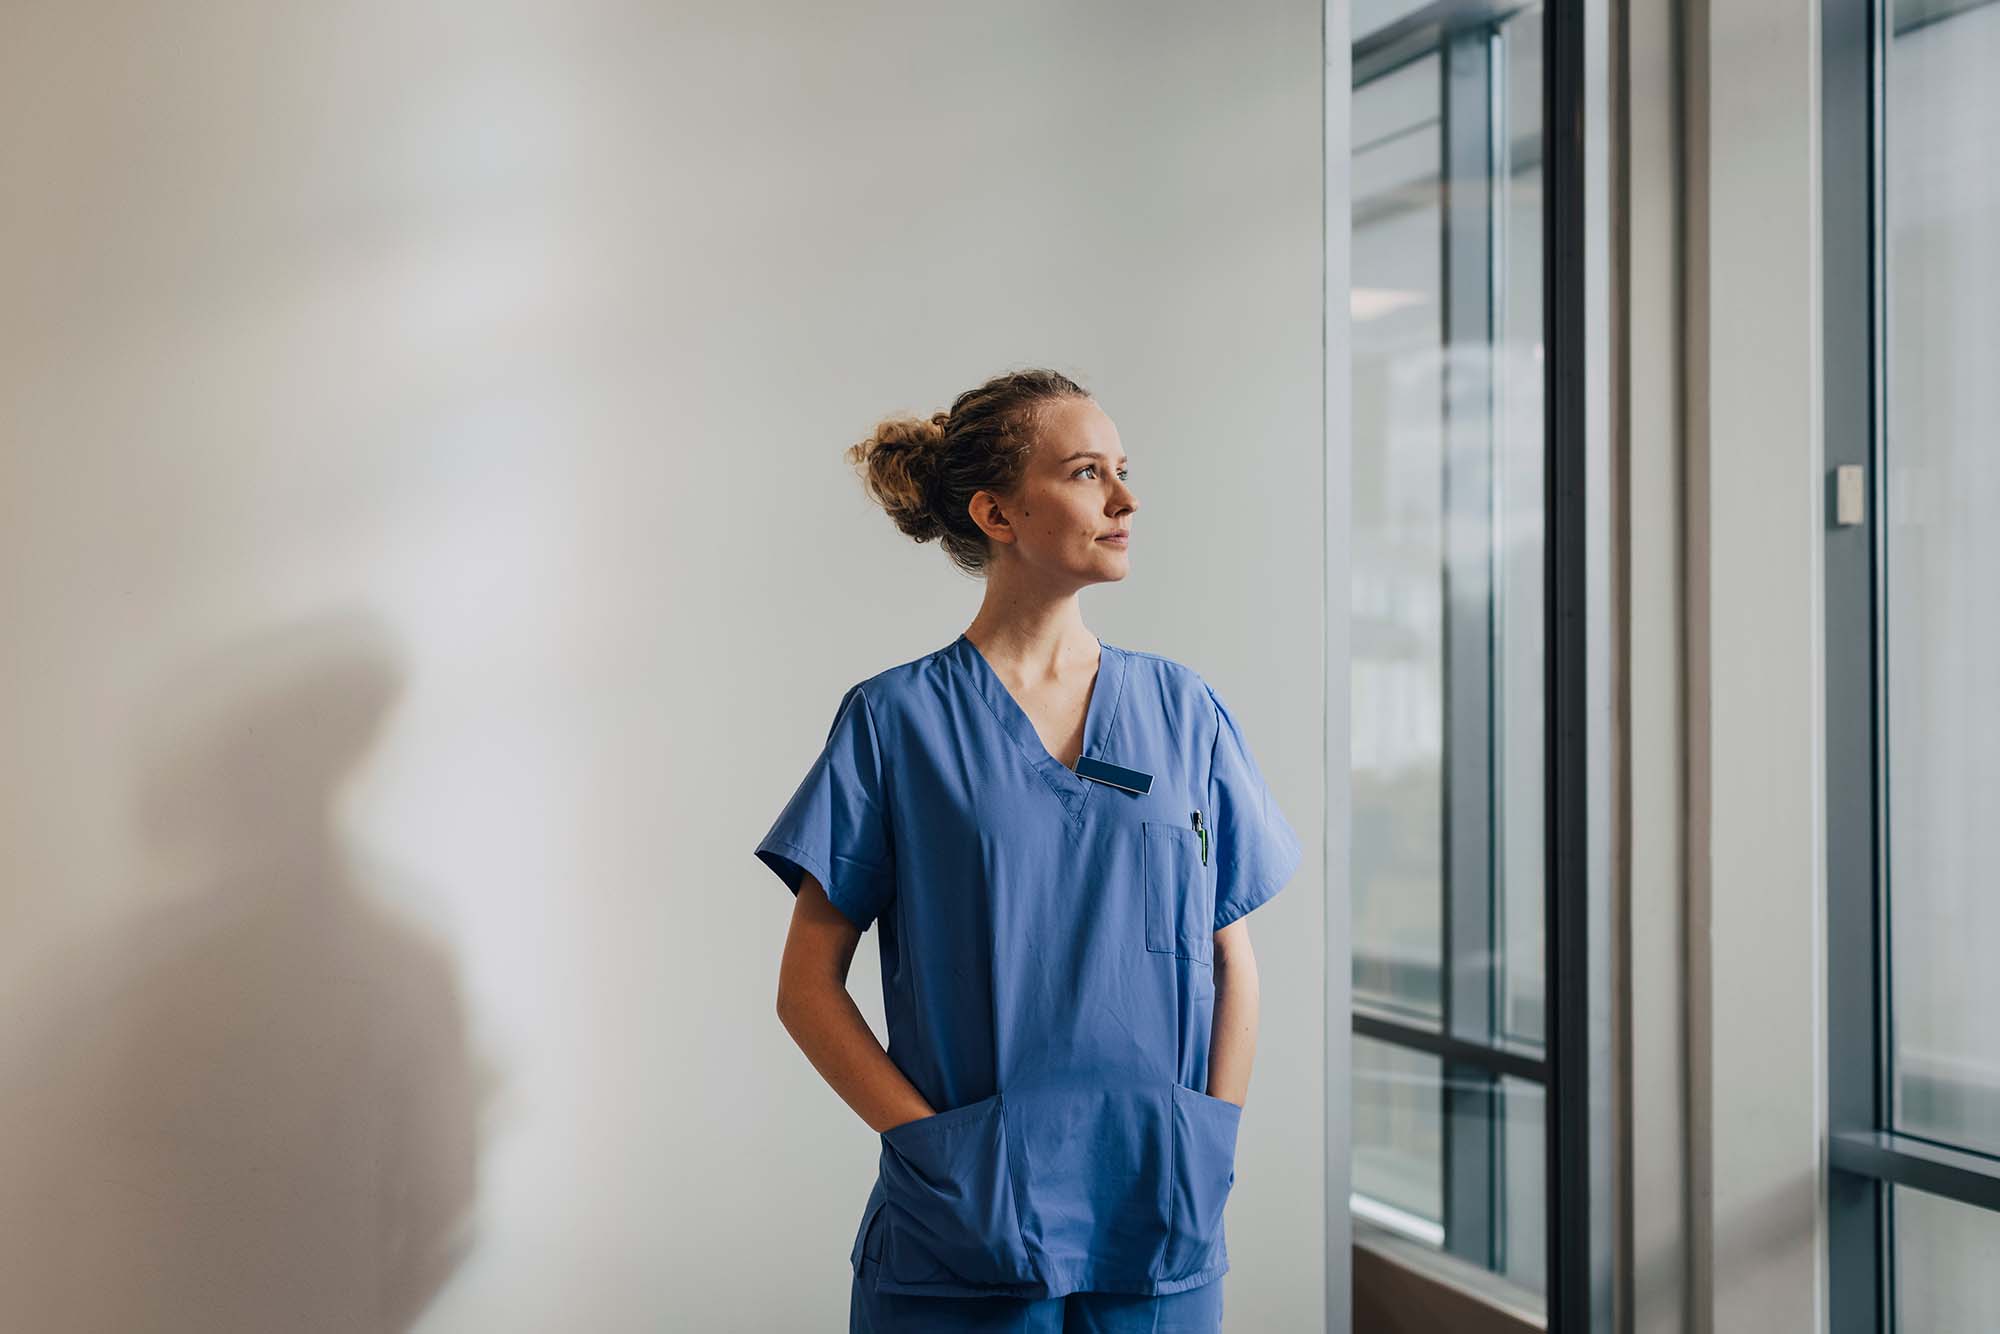 En kvinnlig sjuksköterska med blåa arbetskläder tittar ut genom fönstret